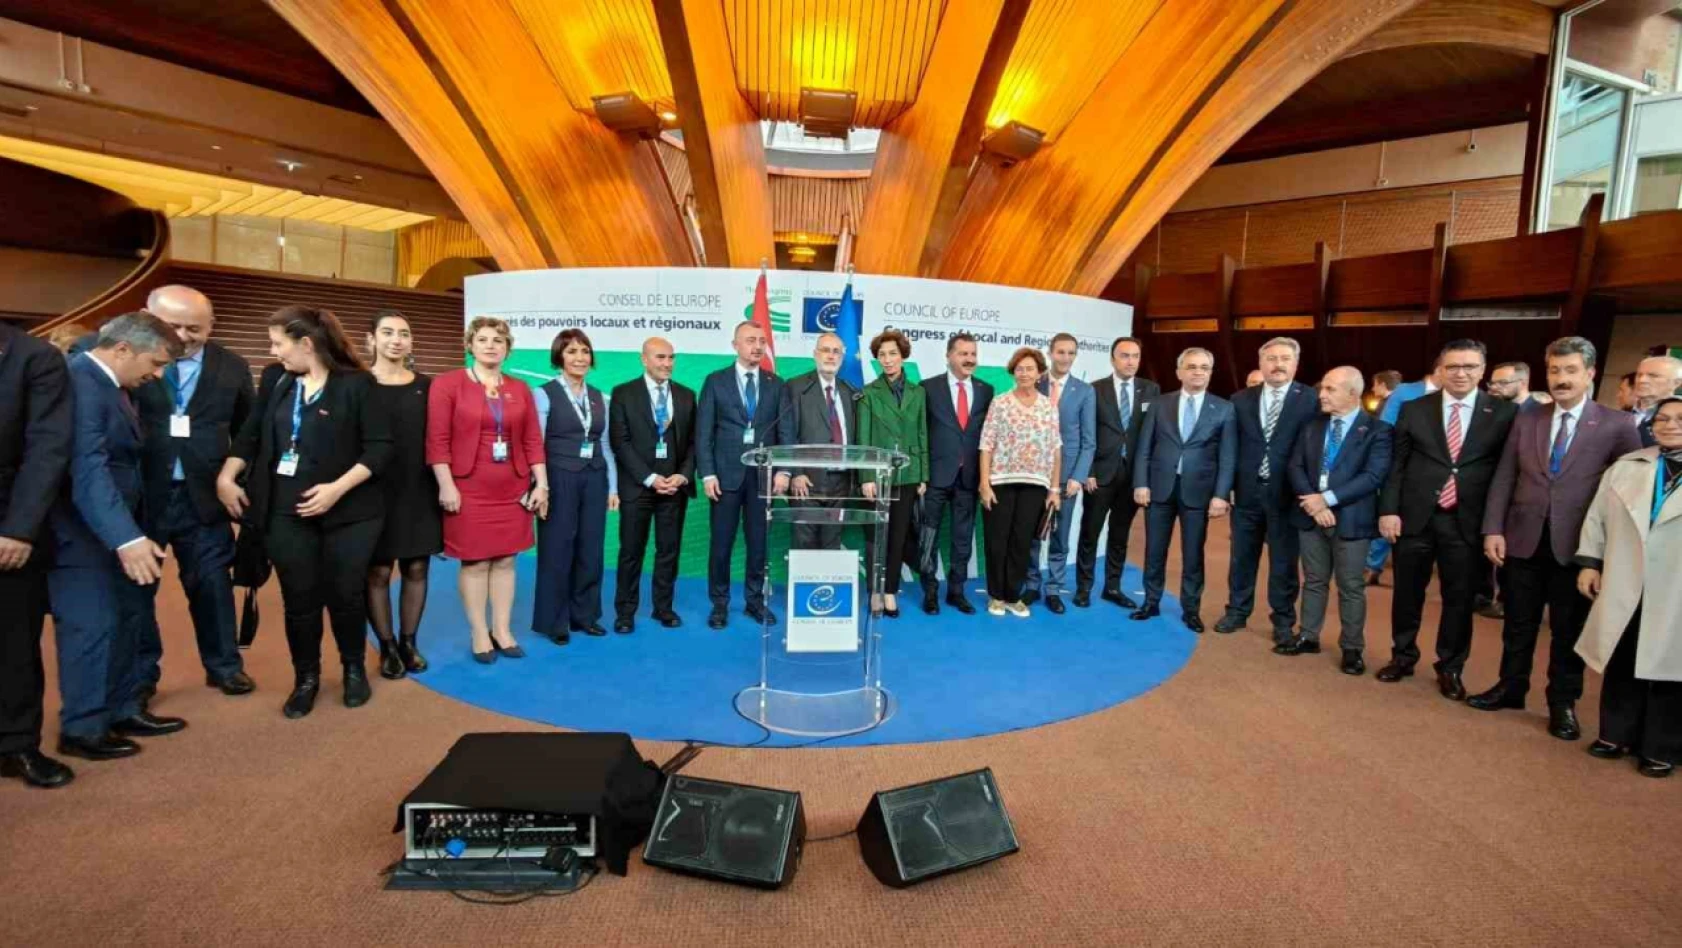 Başkan Palancıoğlu Avrupa Konseyi'nde müjde verdi: 'Avrupa Birliği'nin toplantısı Aralık ayında Kayseri'de yapılacak'